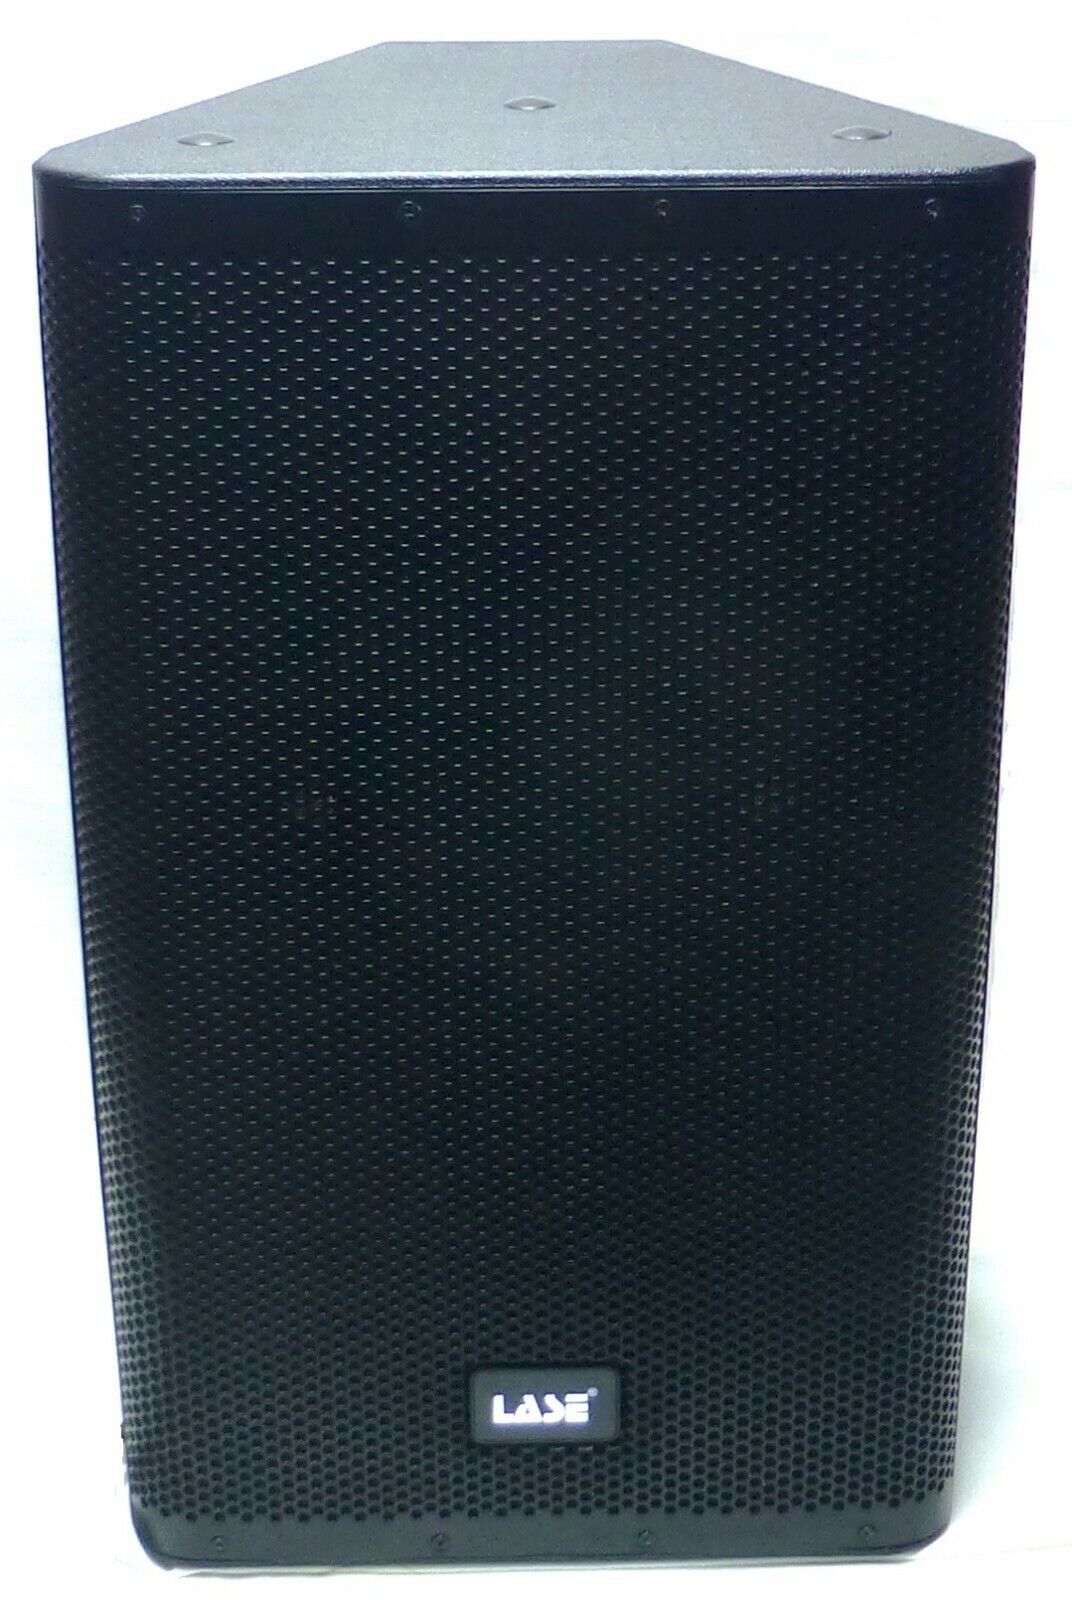 LASE LA-12 Two-Way 12" Powered Speaker 1000W Class D